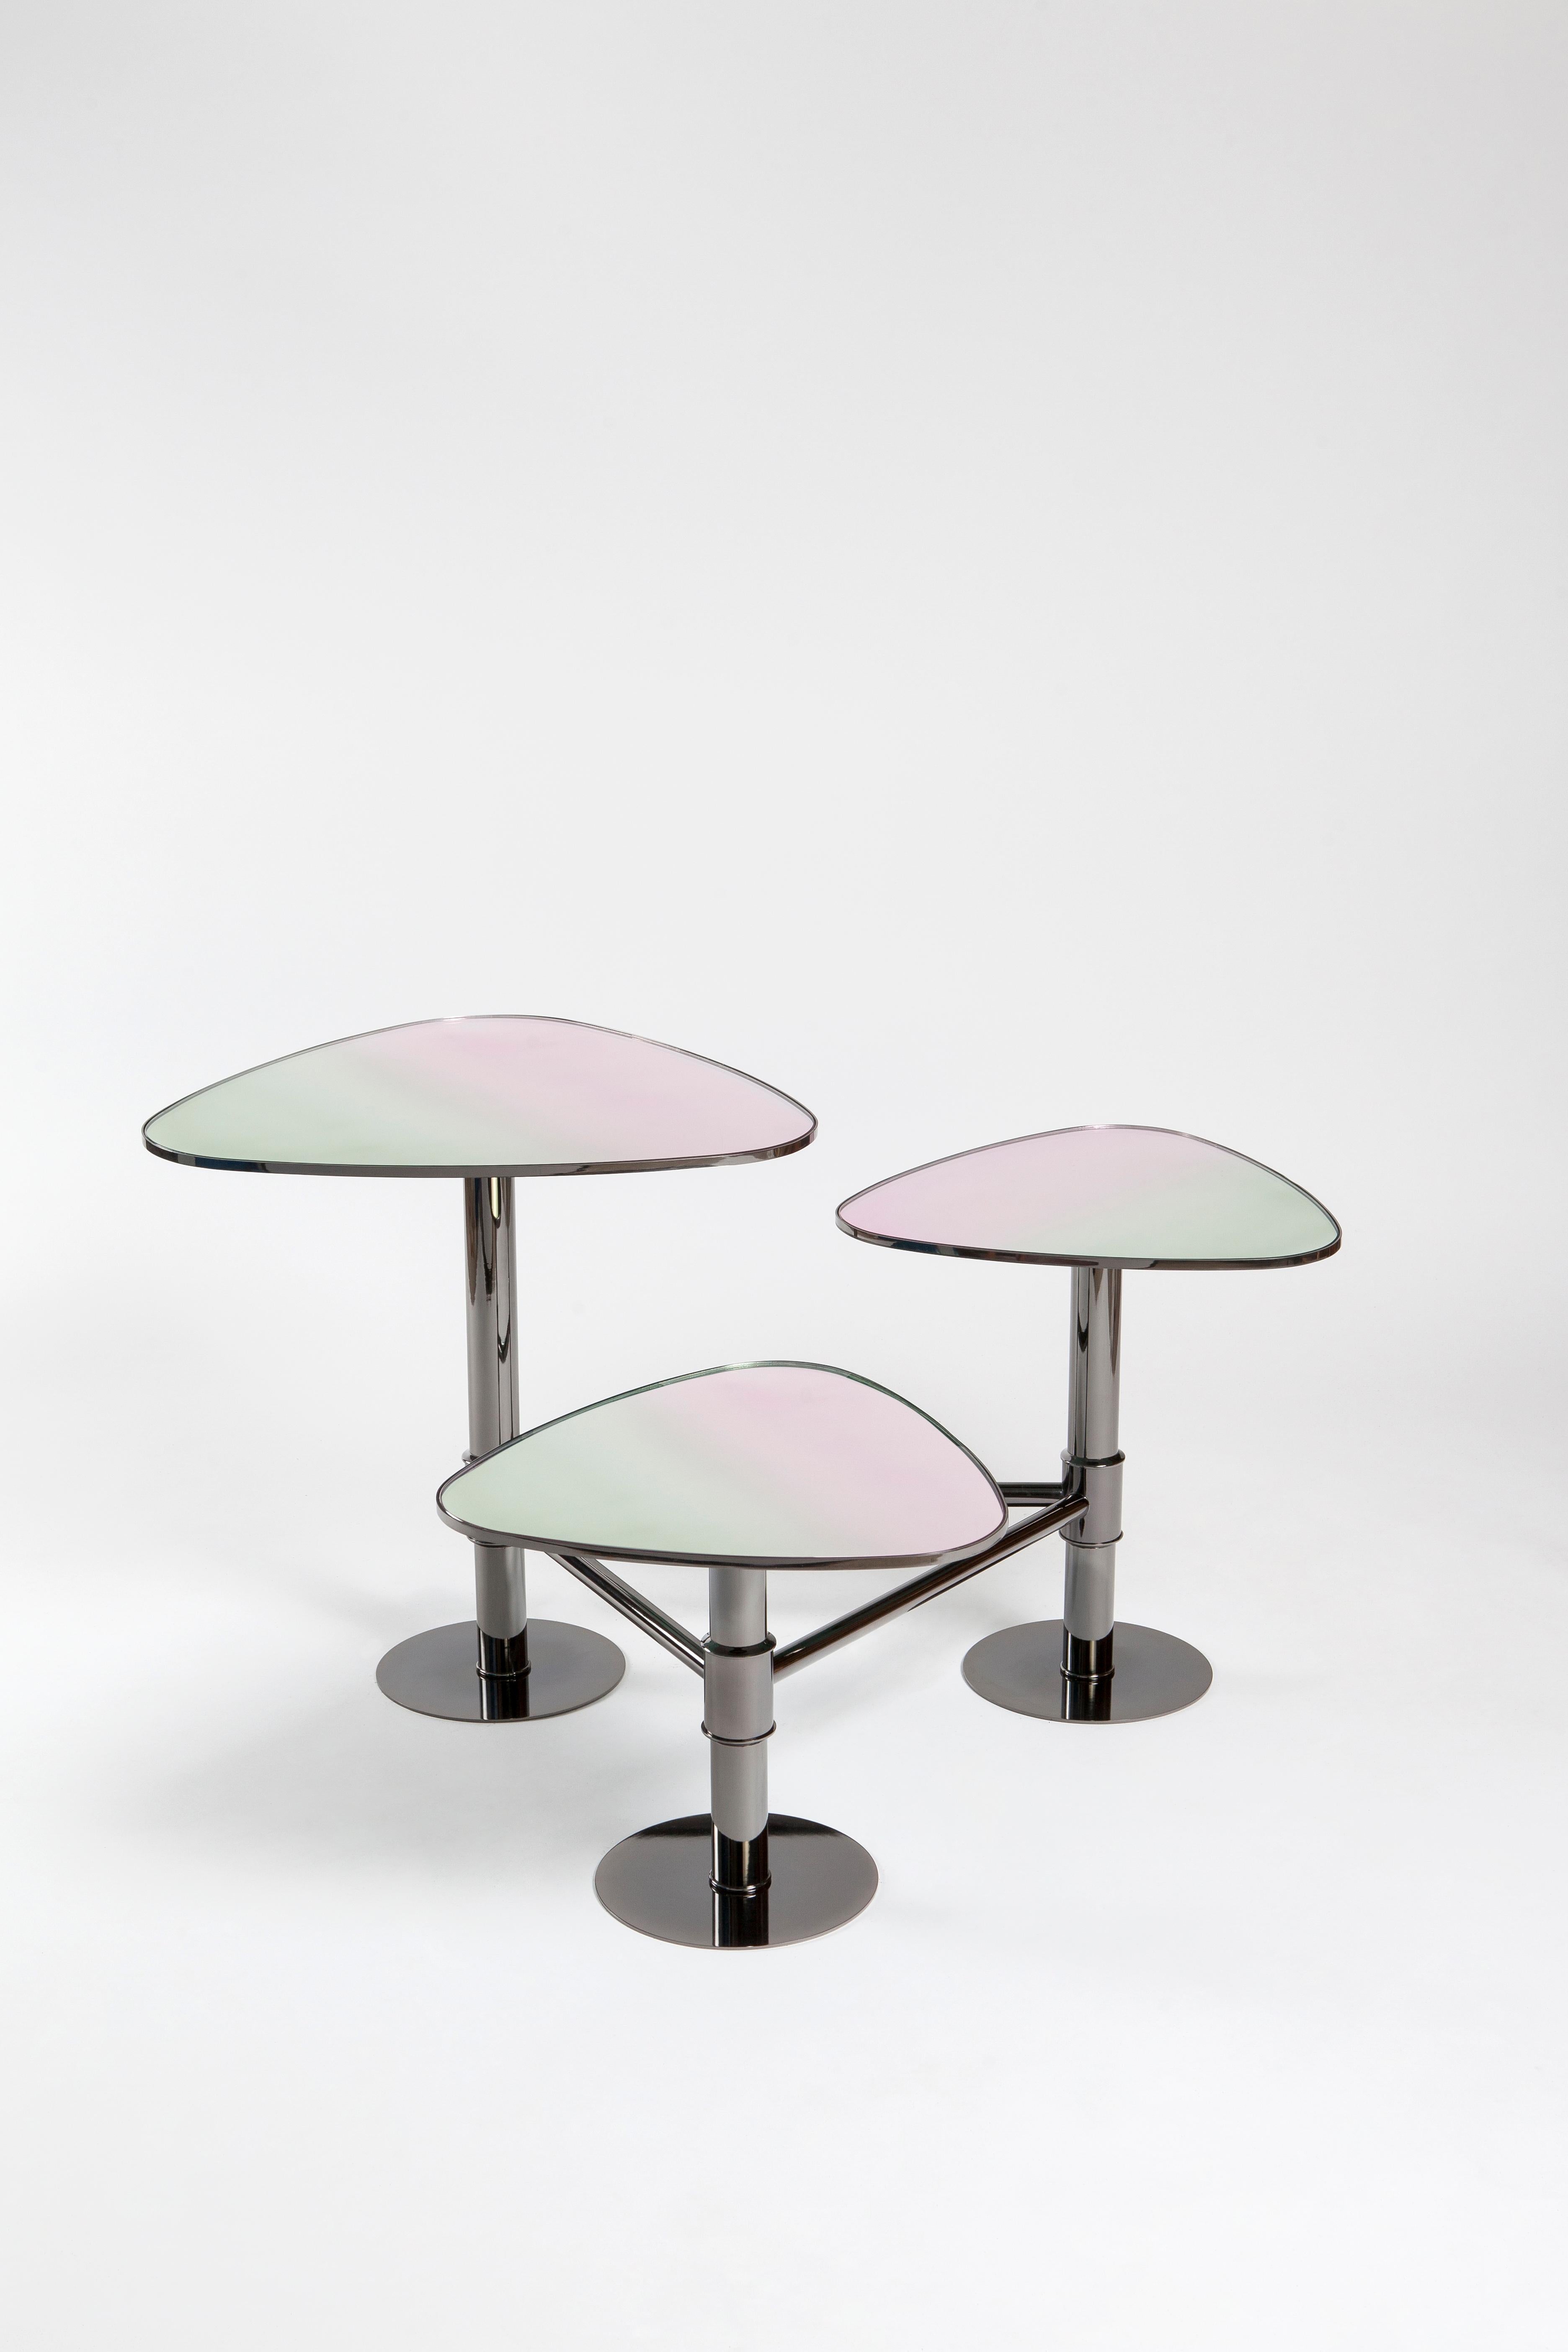 Der dreifache, aus Metall gefertigte, marmorne Mitteltisch von KONTRA.
 Mitteltisch, Couchtisch.

